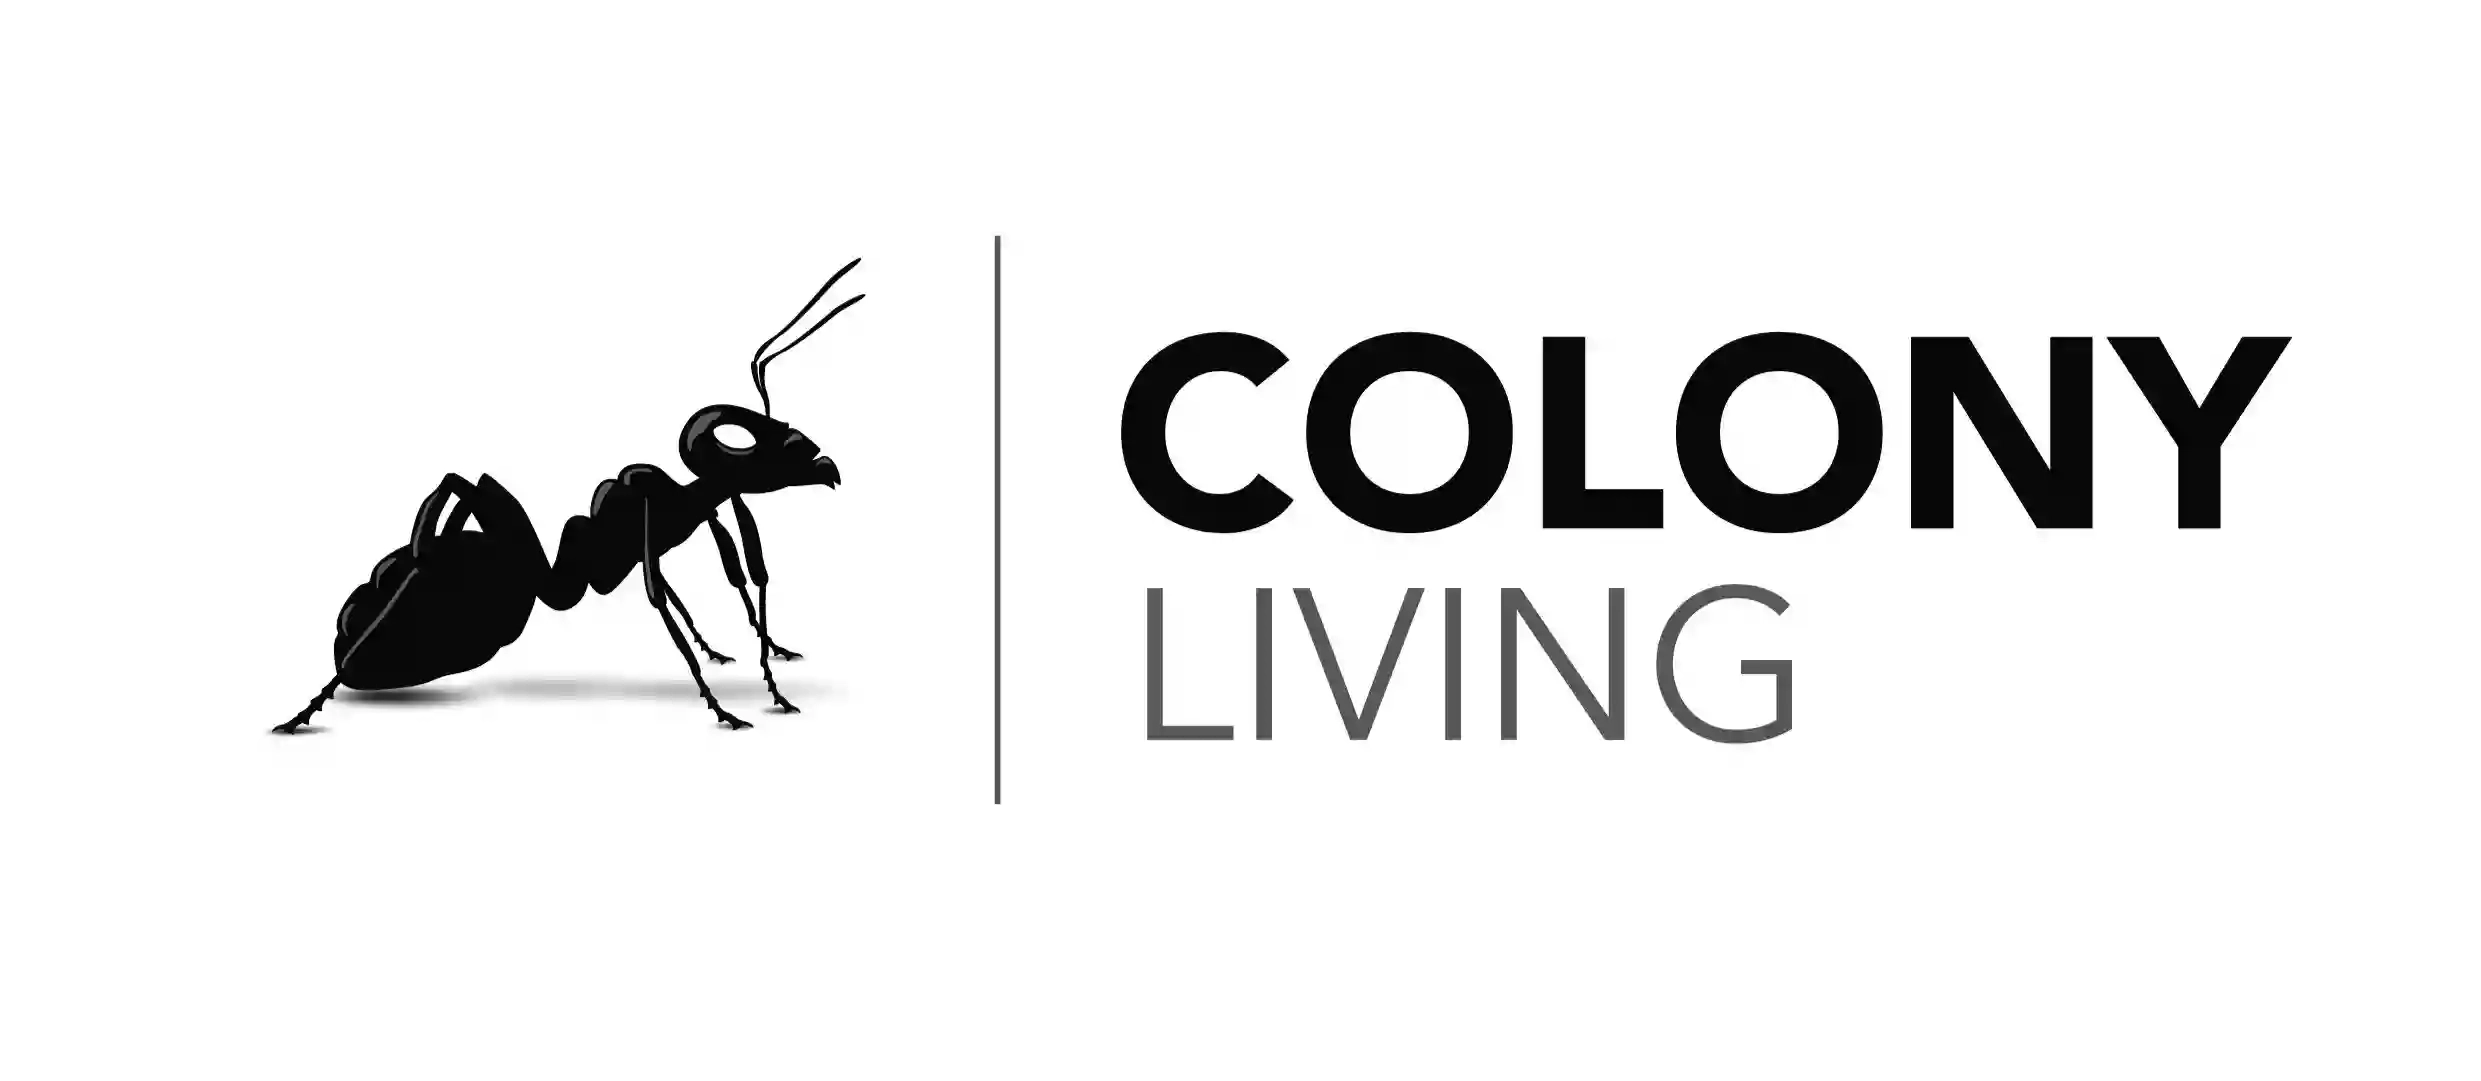 Colony Living - HMO Management